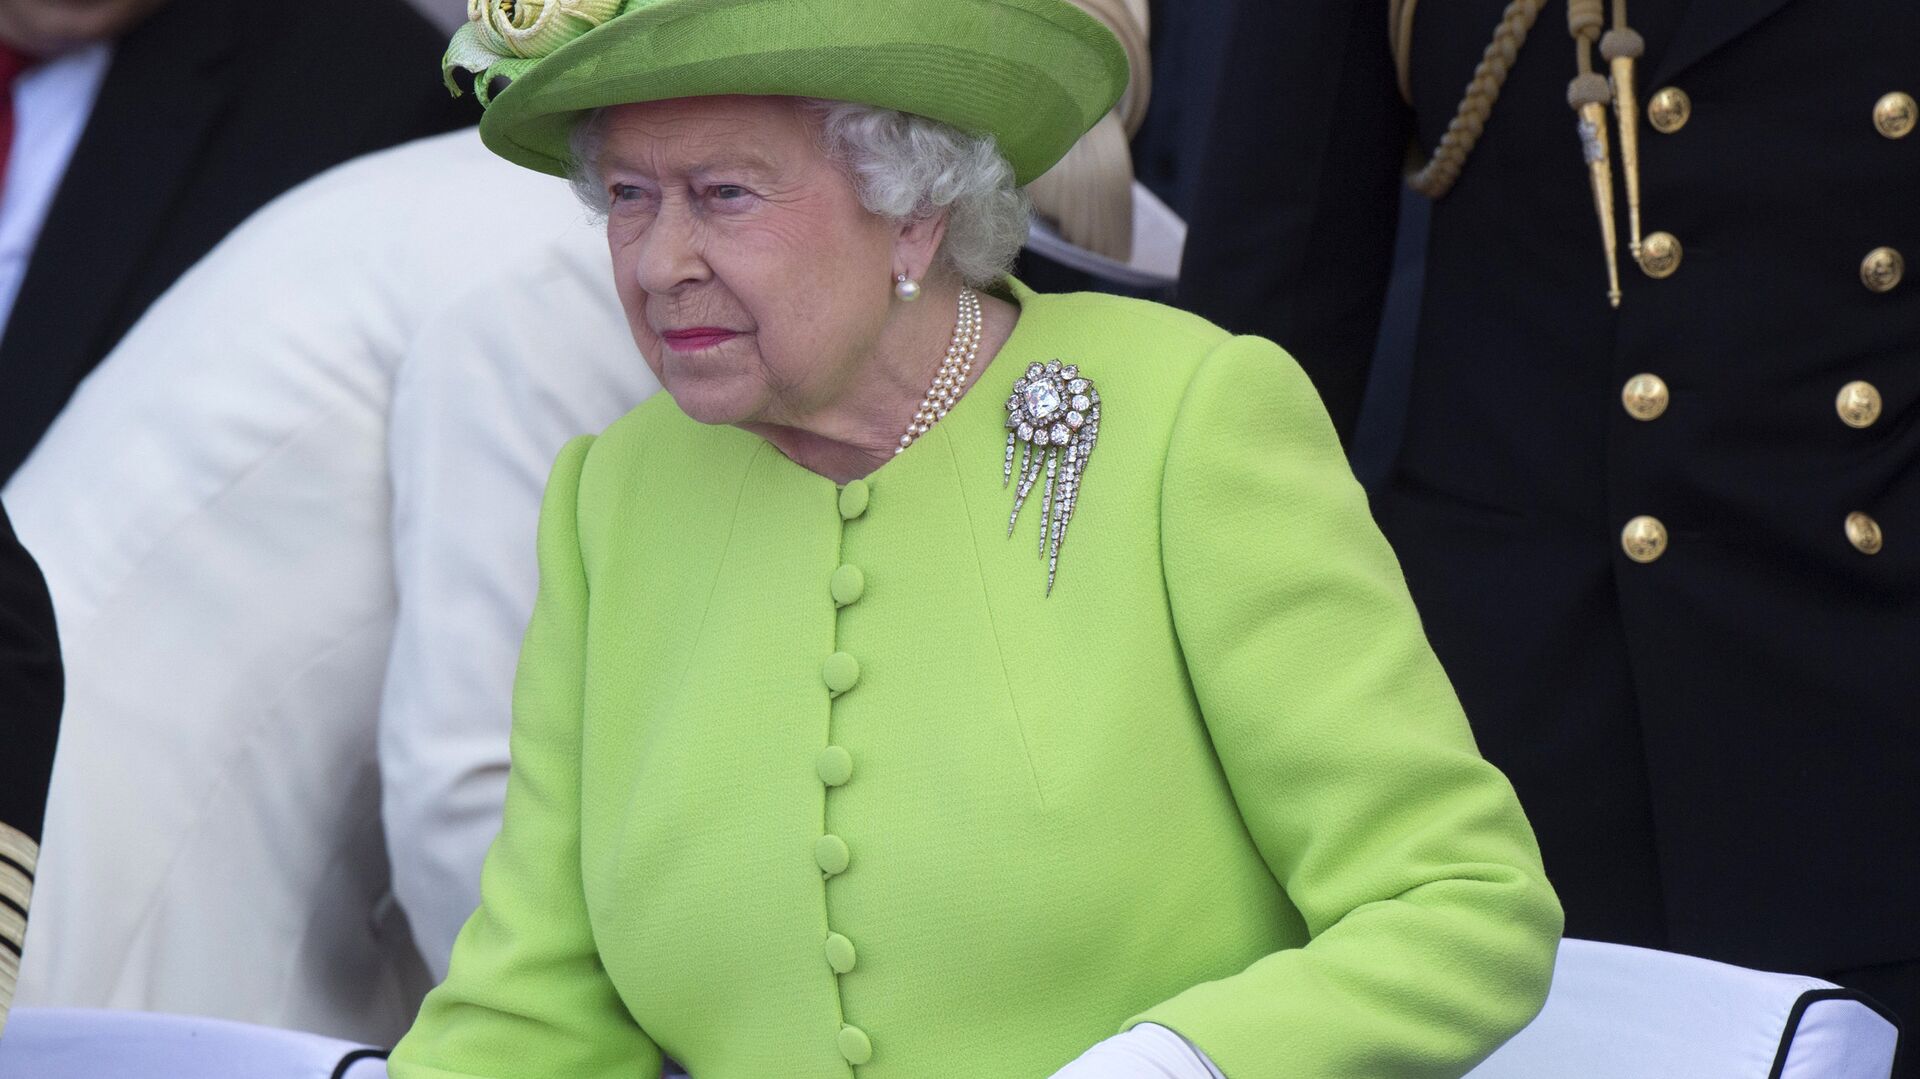 6 июня 2014. Королева Великобритании Елизавета II во время торжественной церемонии празднования 70-летия высадки союзников в Нормандии. - РИА Новости, 1920, 27.05.2015